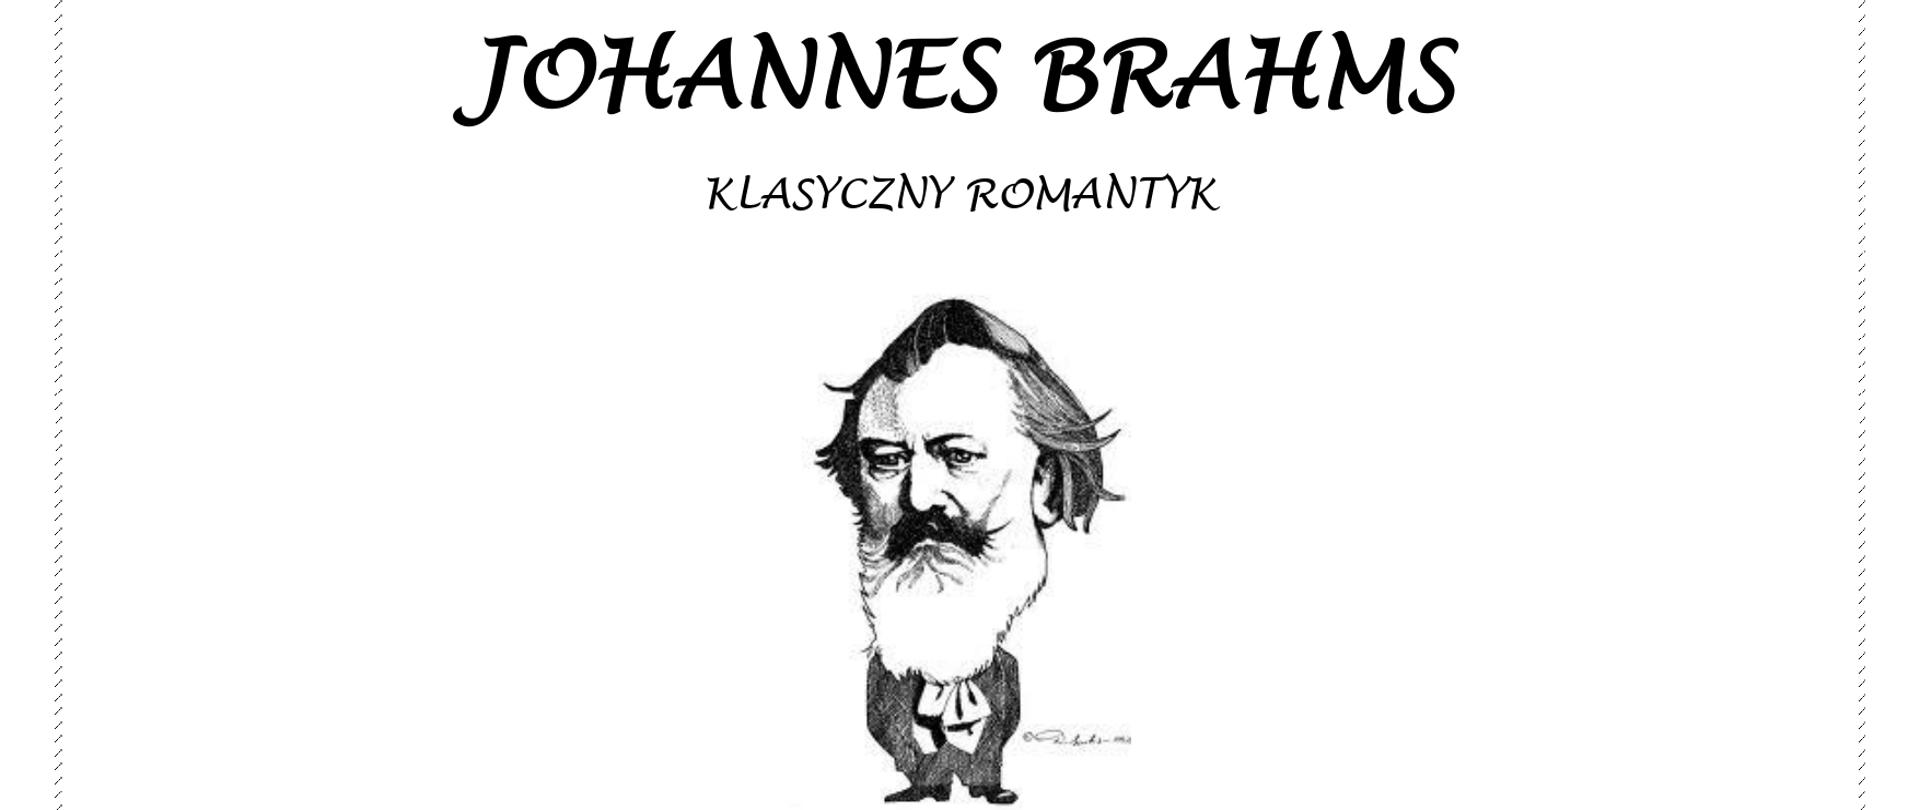 na białym tle na środku sylwetka Johannesa Brahmsa powyżej napis z tytułem prelekcji